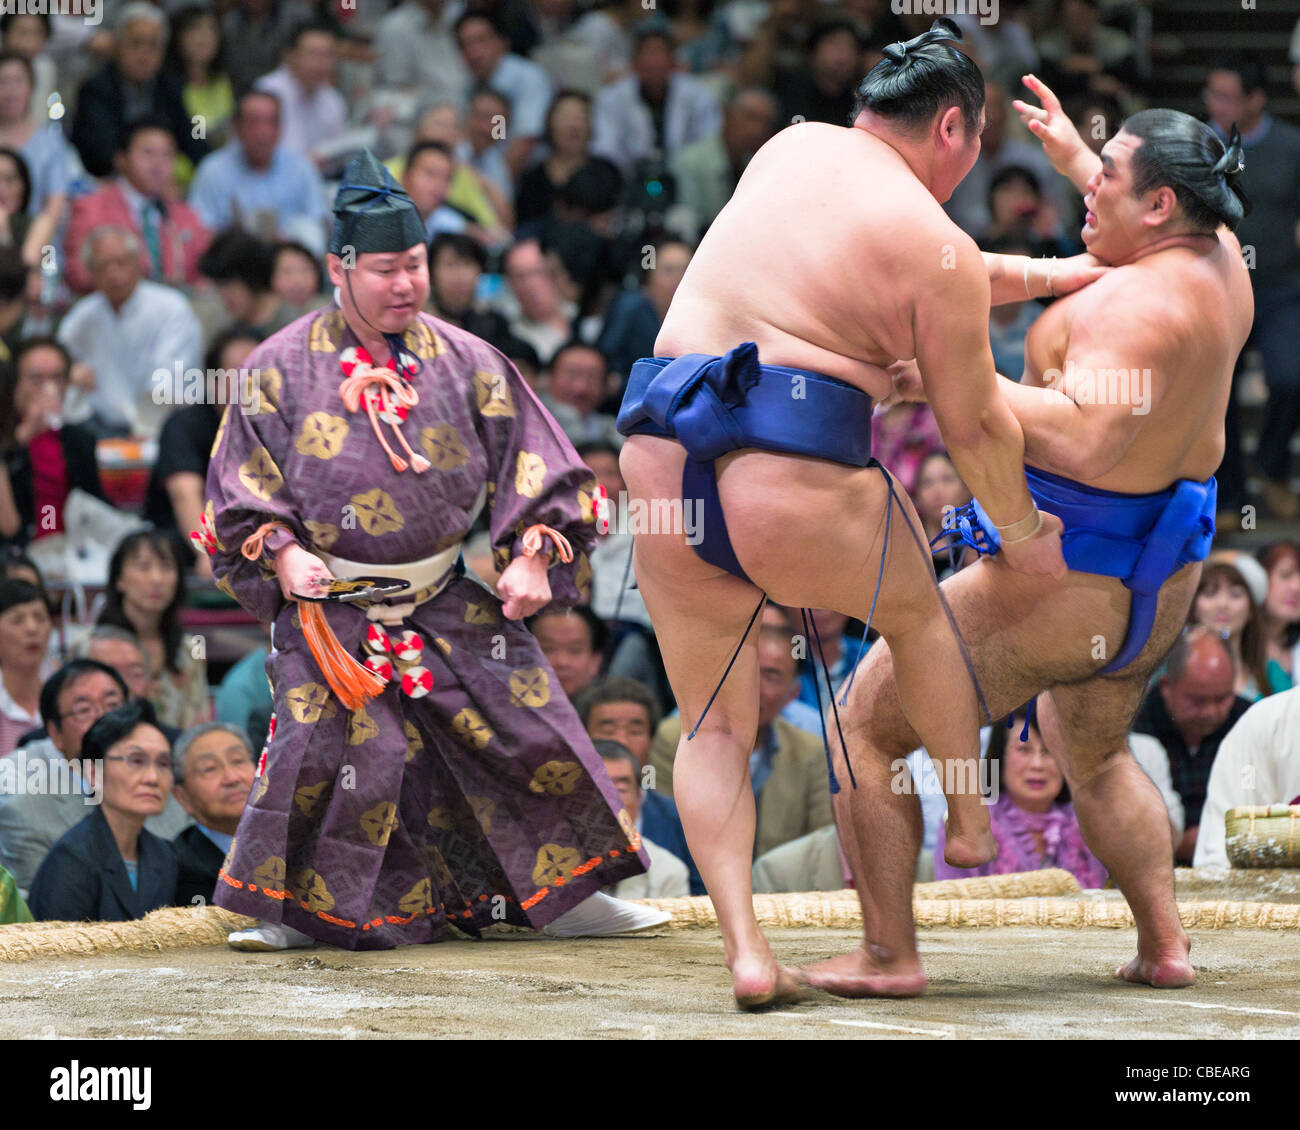 Un arbitre regarde deux lutteurs de sumo en concurrence dans le Grand tournoi de Sumo à Tokyo, Tokyo, Japon Banque D'Images